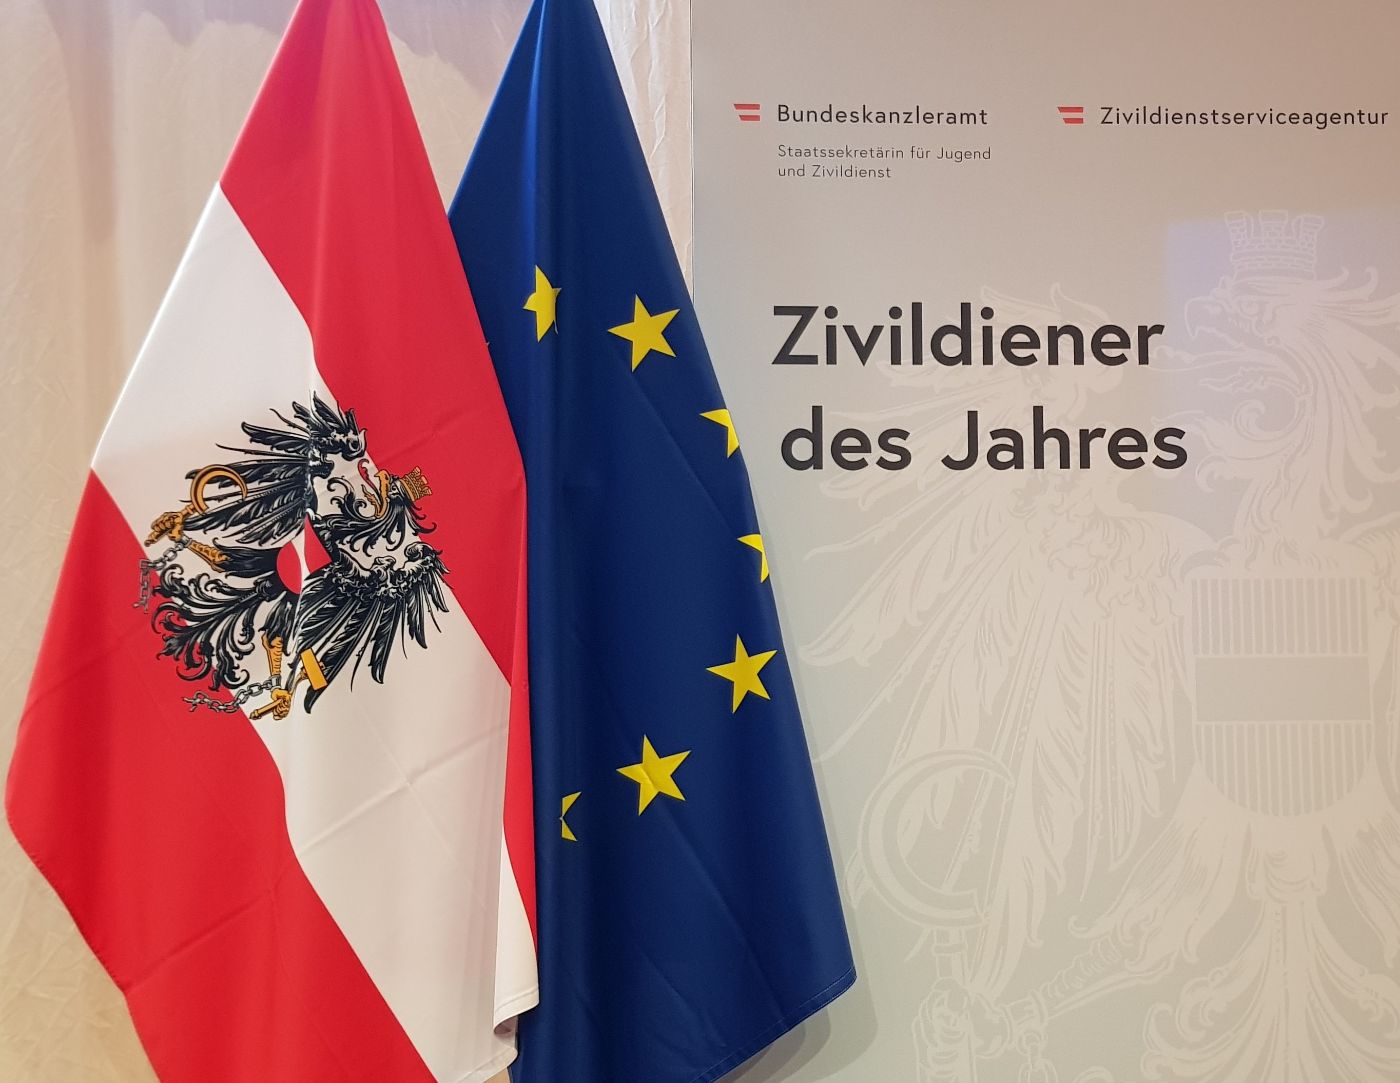 Eine Österreich-Fahne und eine EU-Fahne neben der Fotowand mit der Aufschrift "Zivildiener des Jahres"